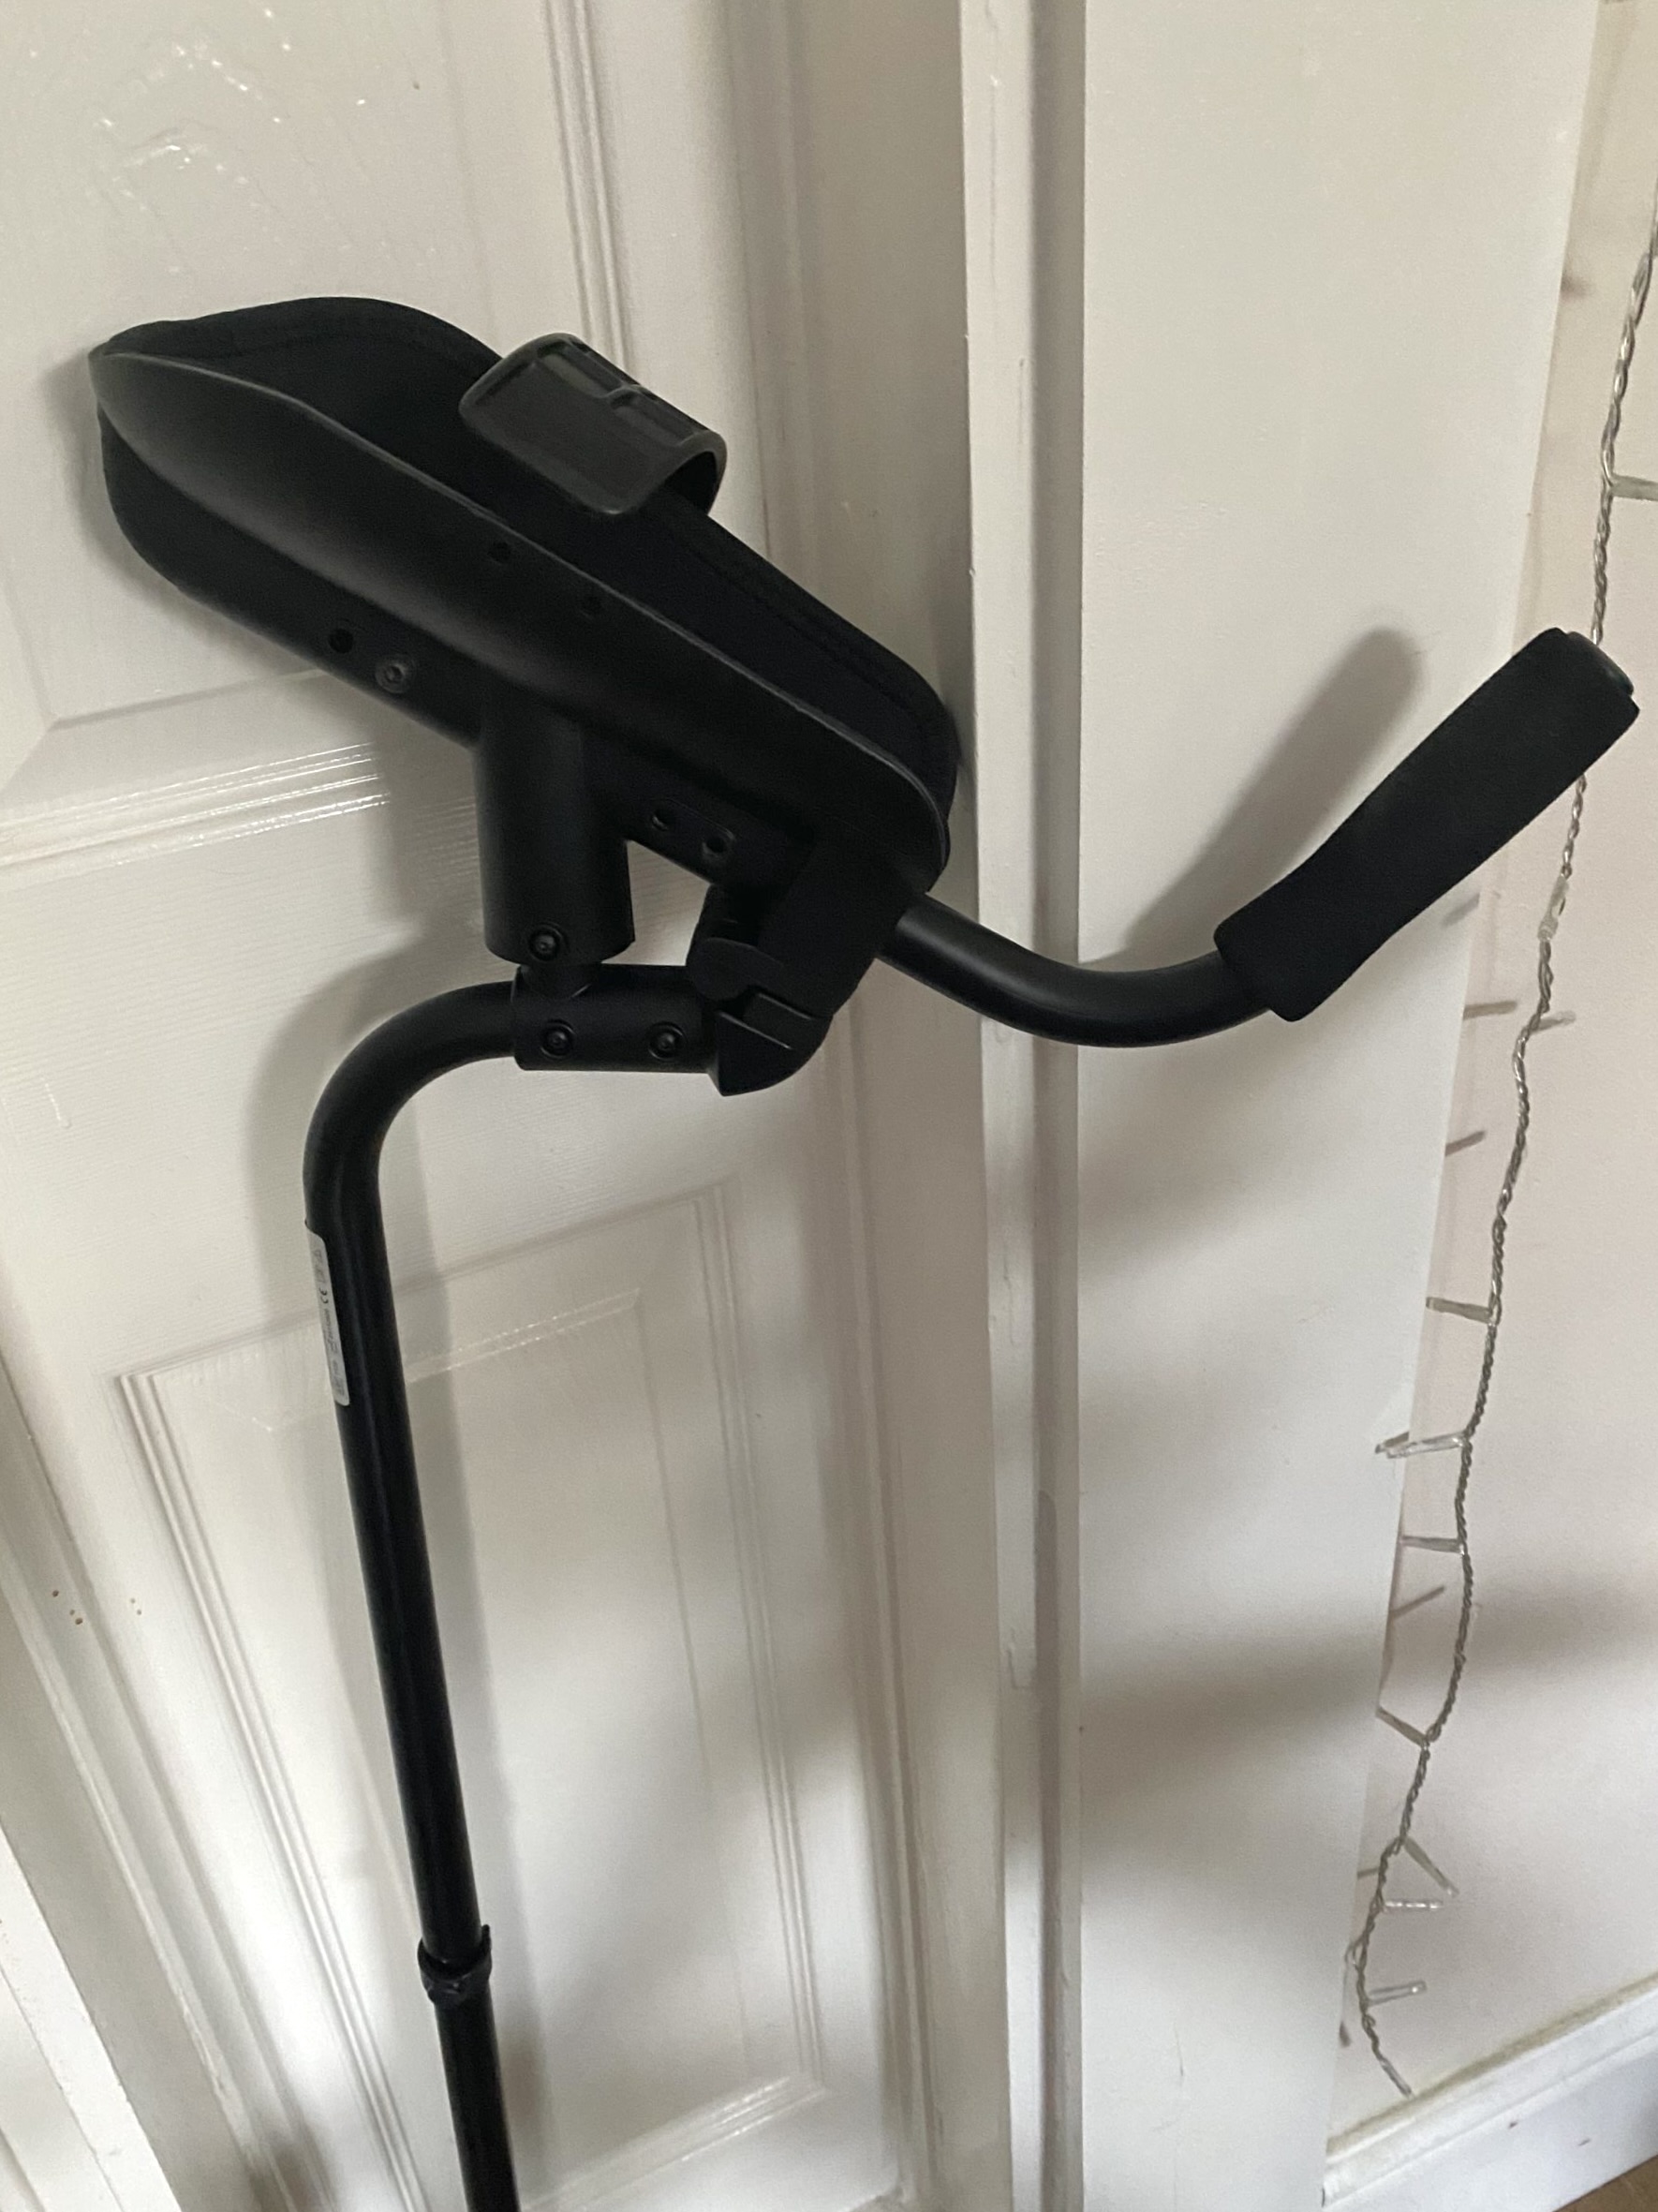 KMINA Pro – Forearm Crutches